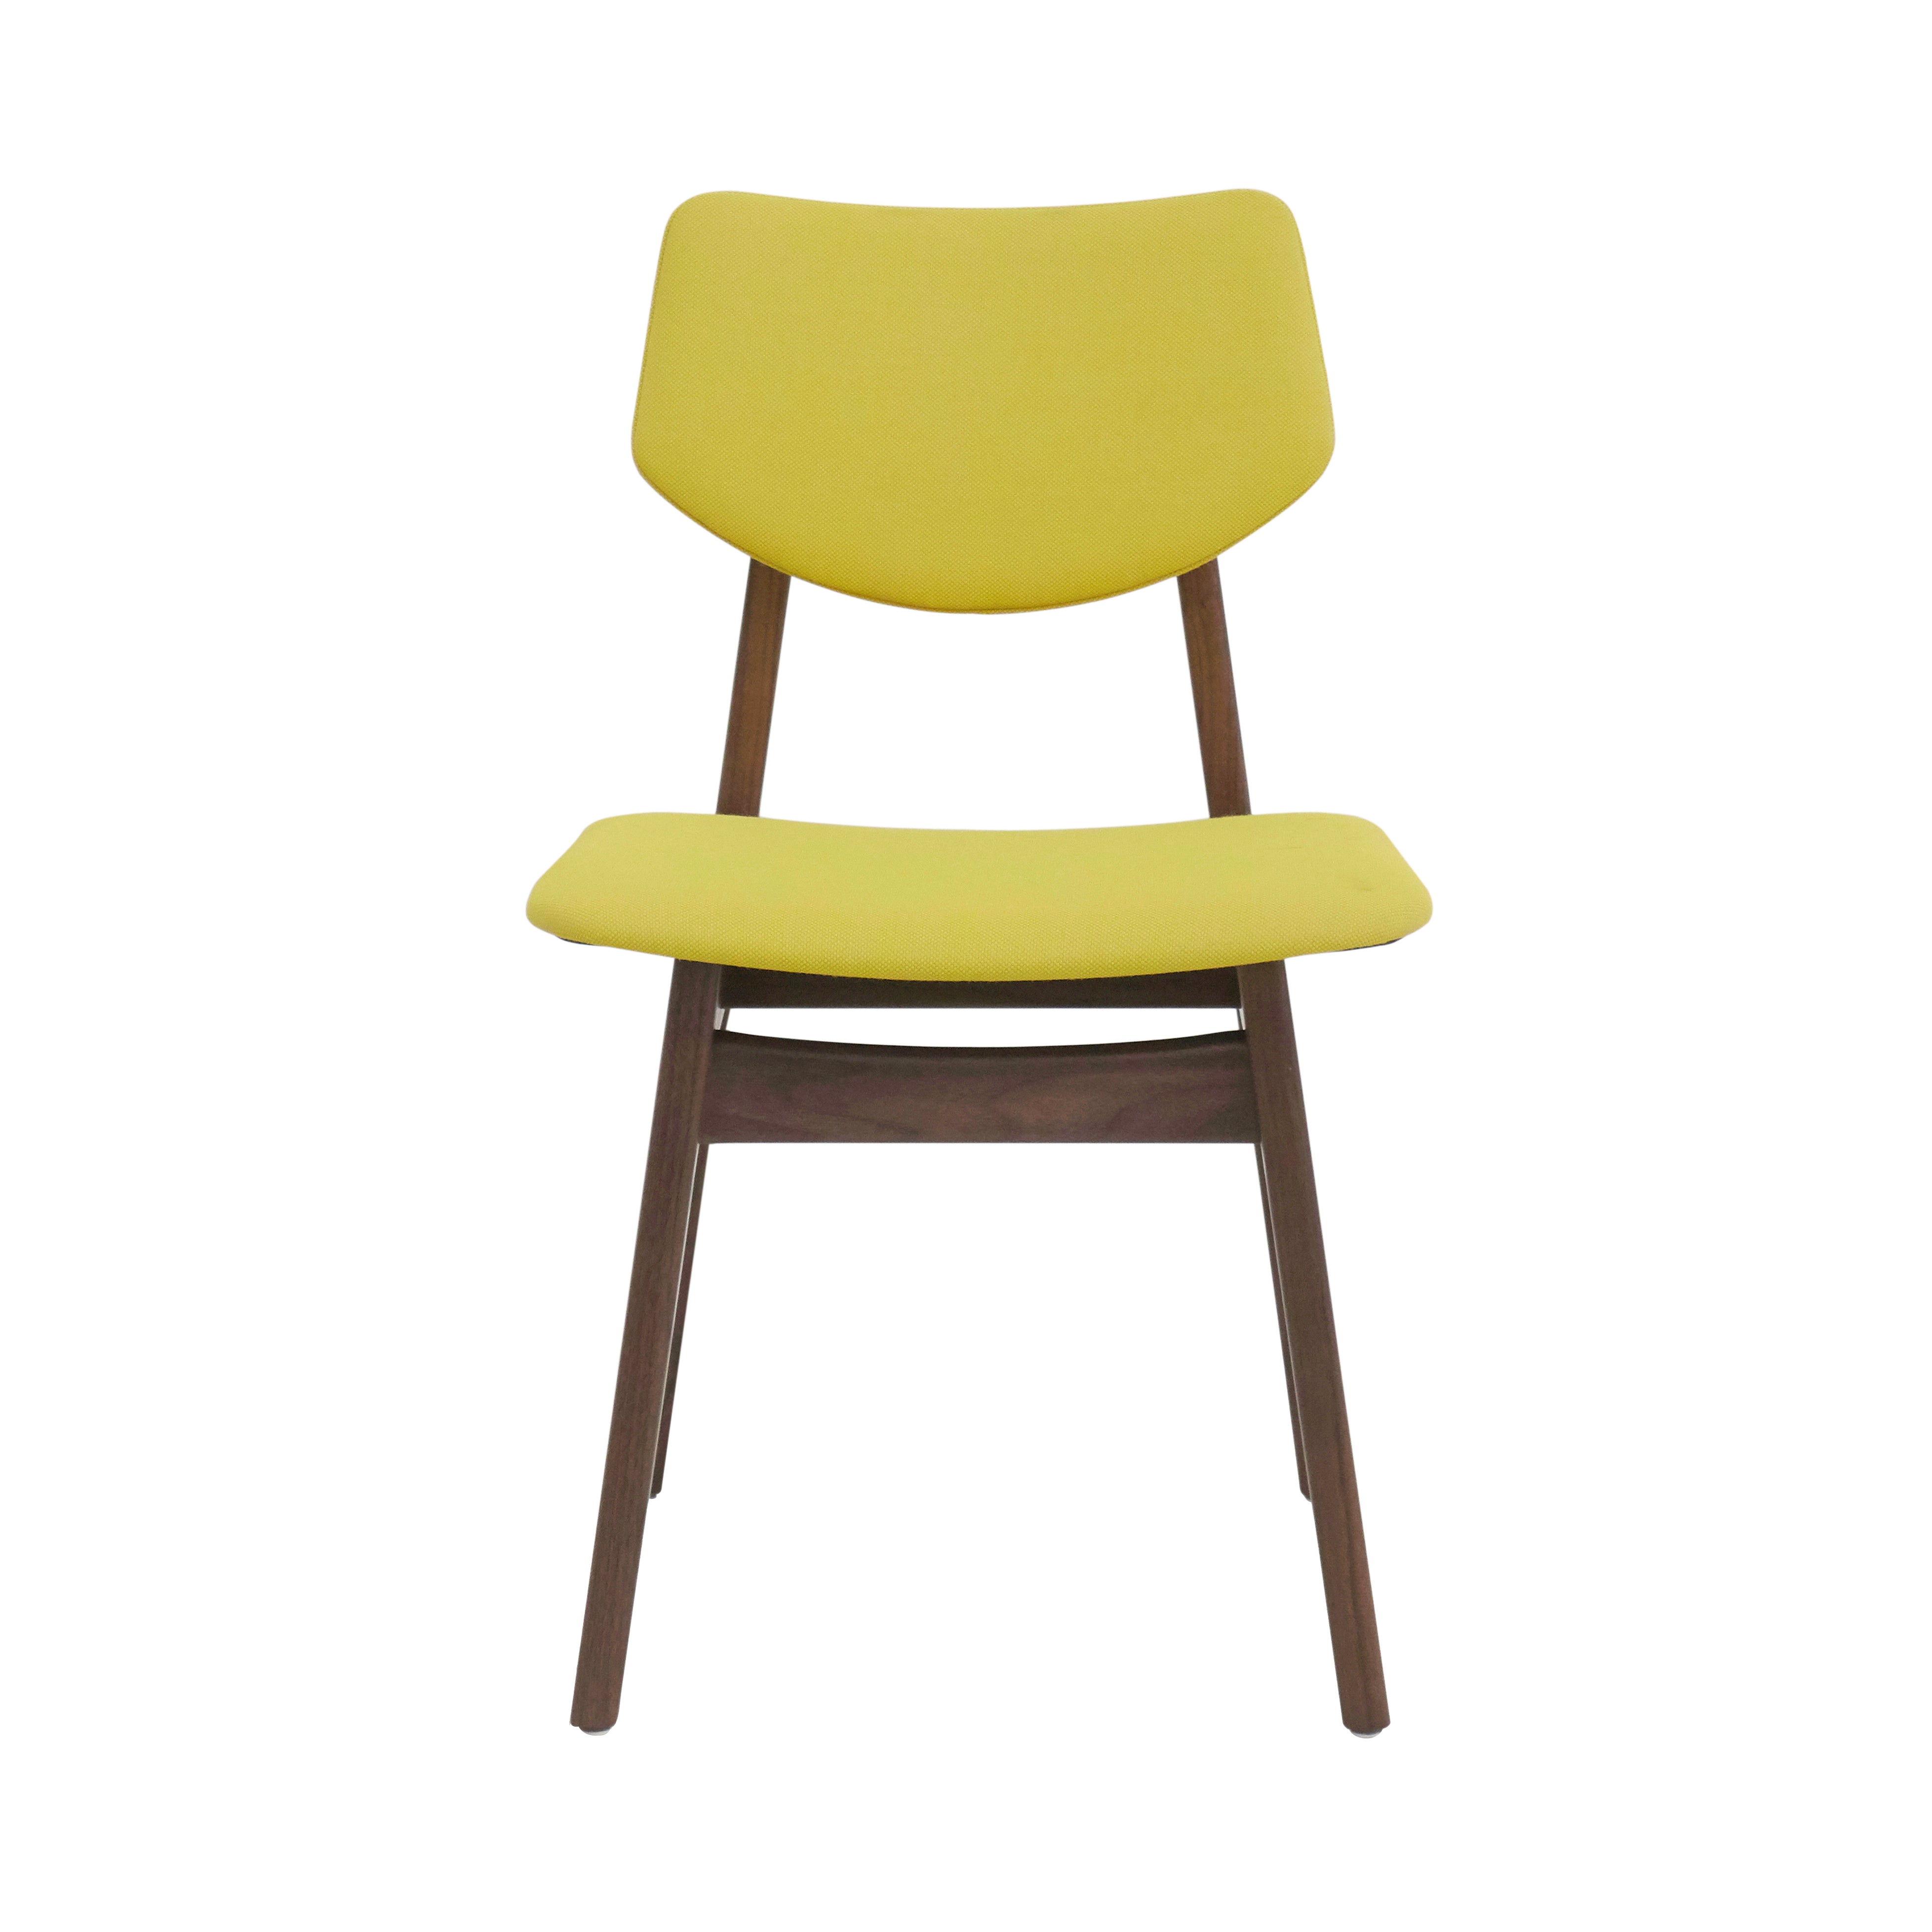 Risom C276 Chair: Natural Walnut